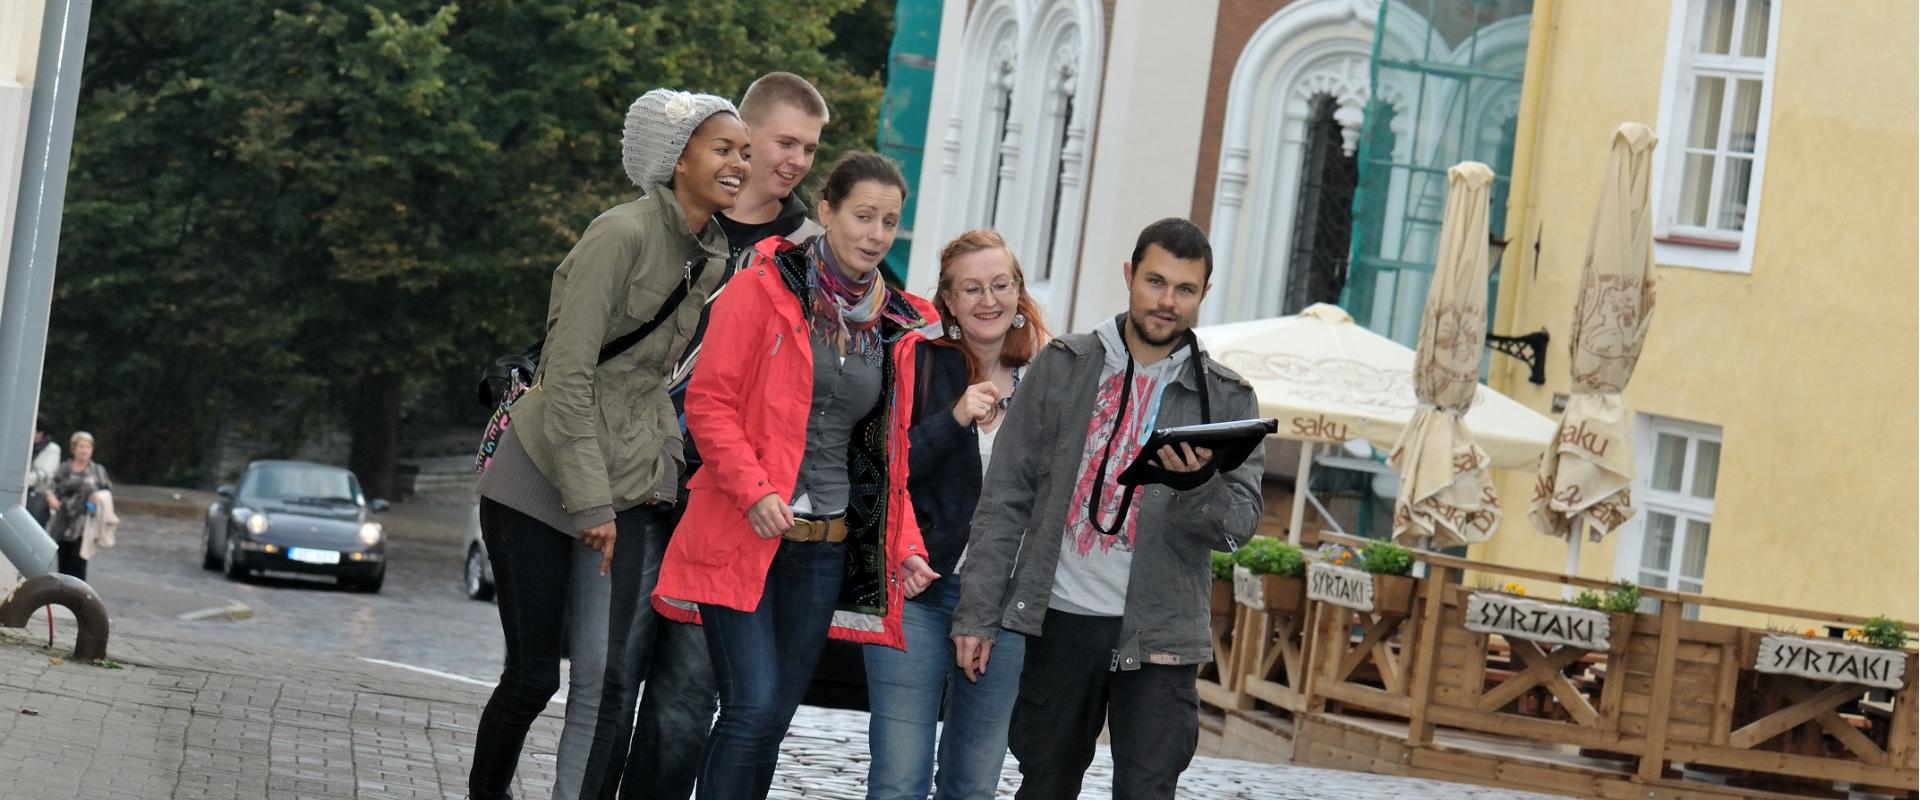 Abenteuer in der Altstadt - hinreißendes Abenteuespiel auf den Straßen der Tallinner Altstadt